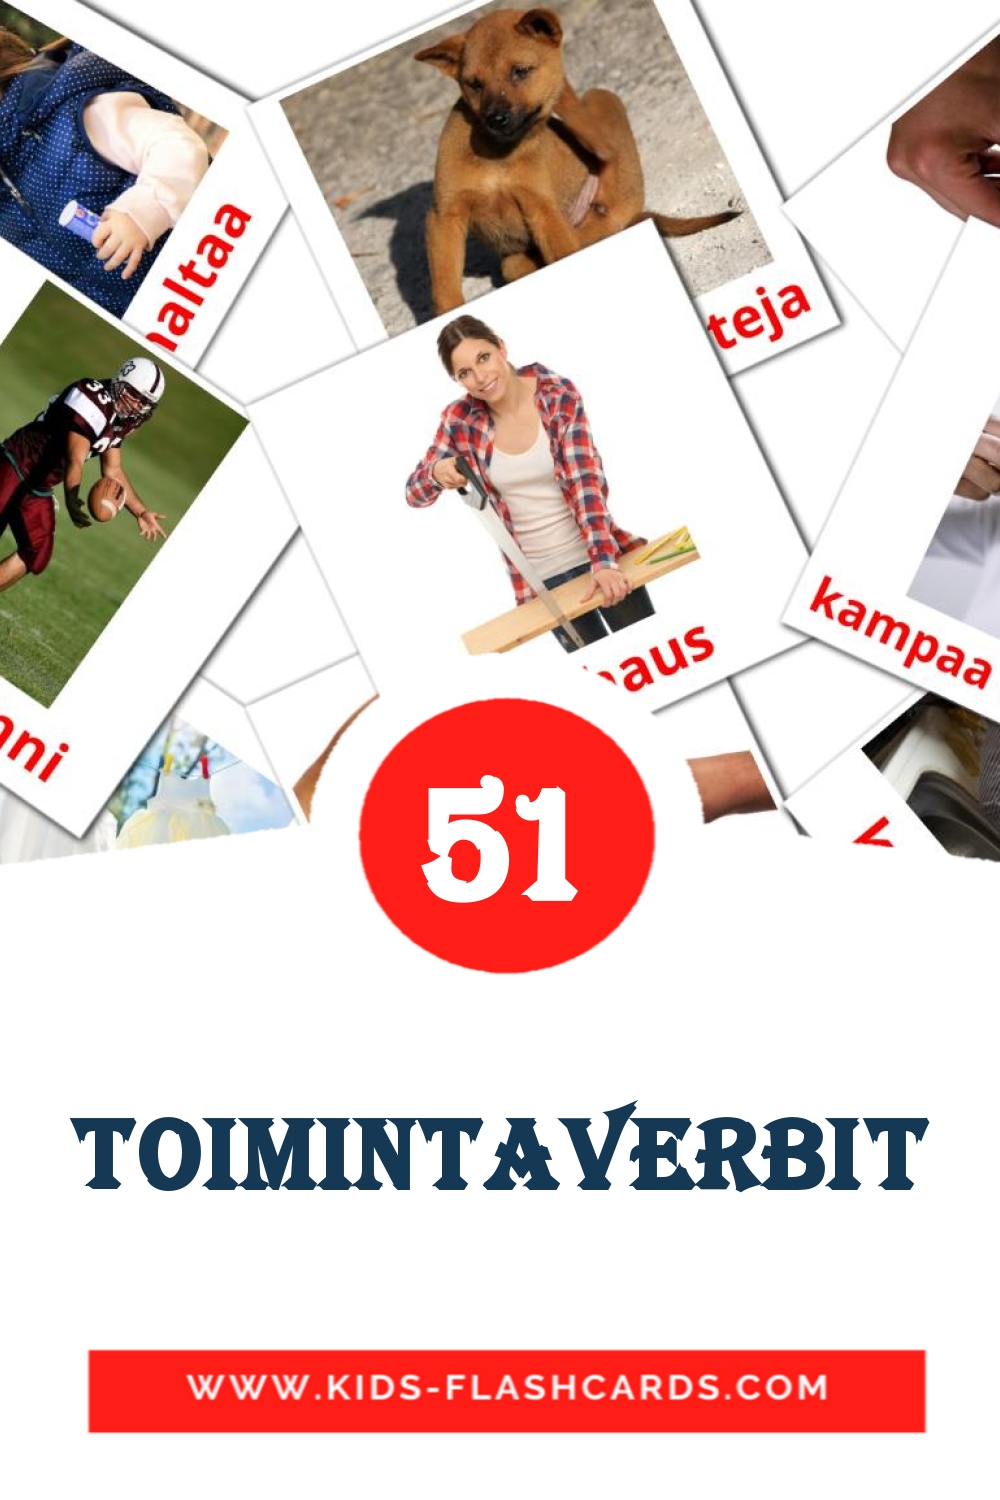 51 tarjetas didacticas de Toimintaverbit para el jardín de infancia en finlandés